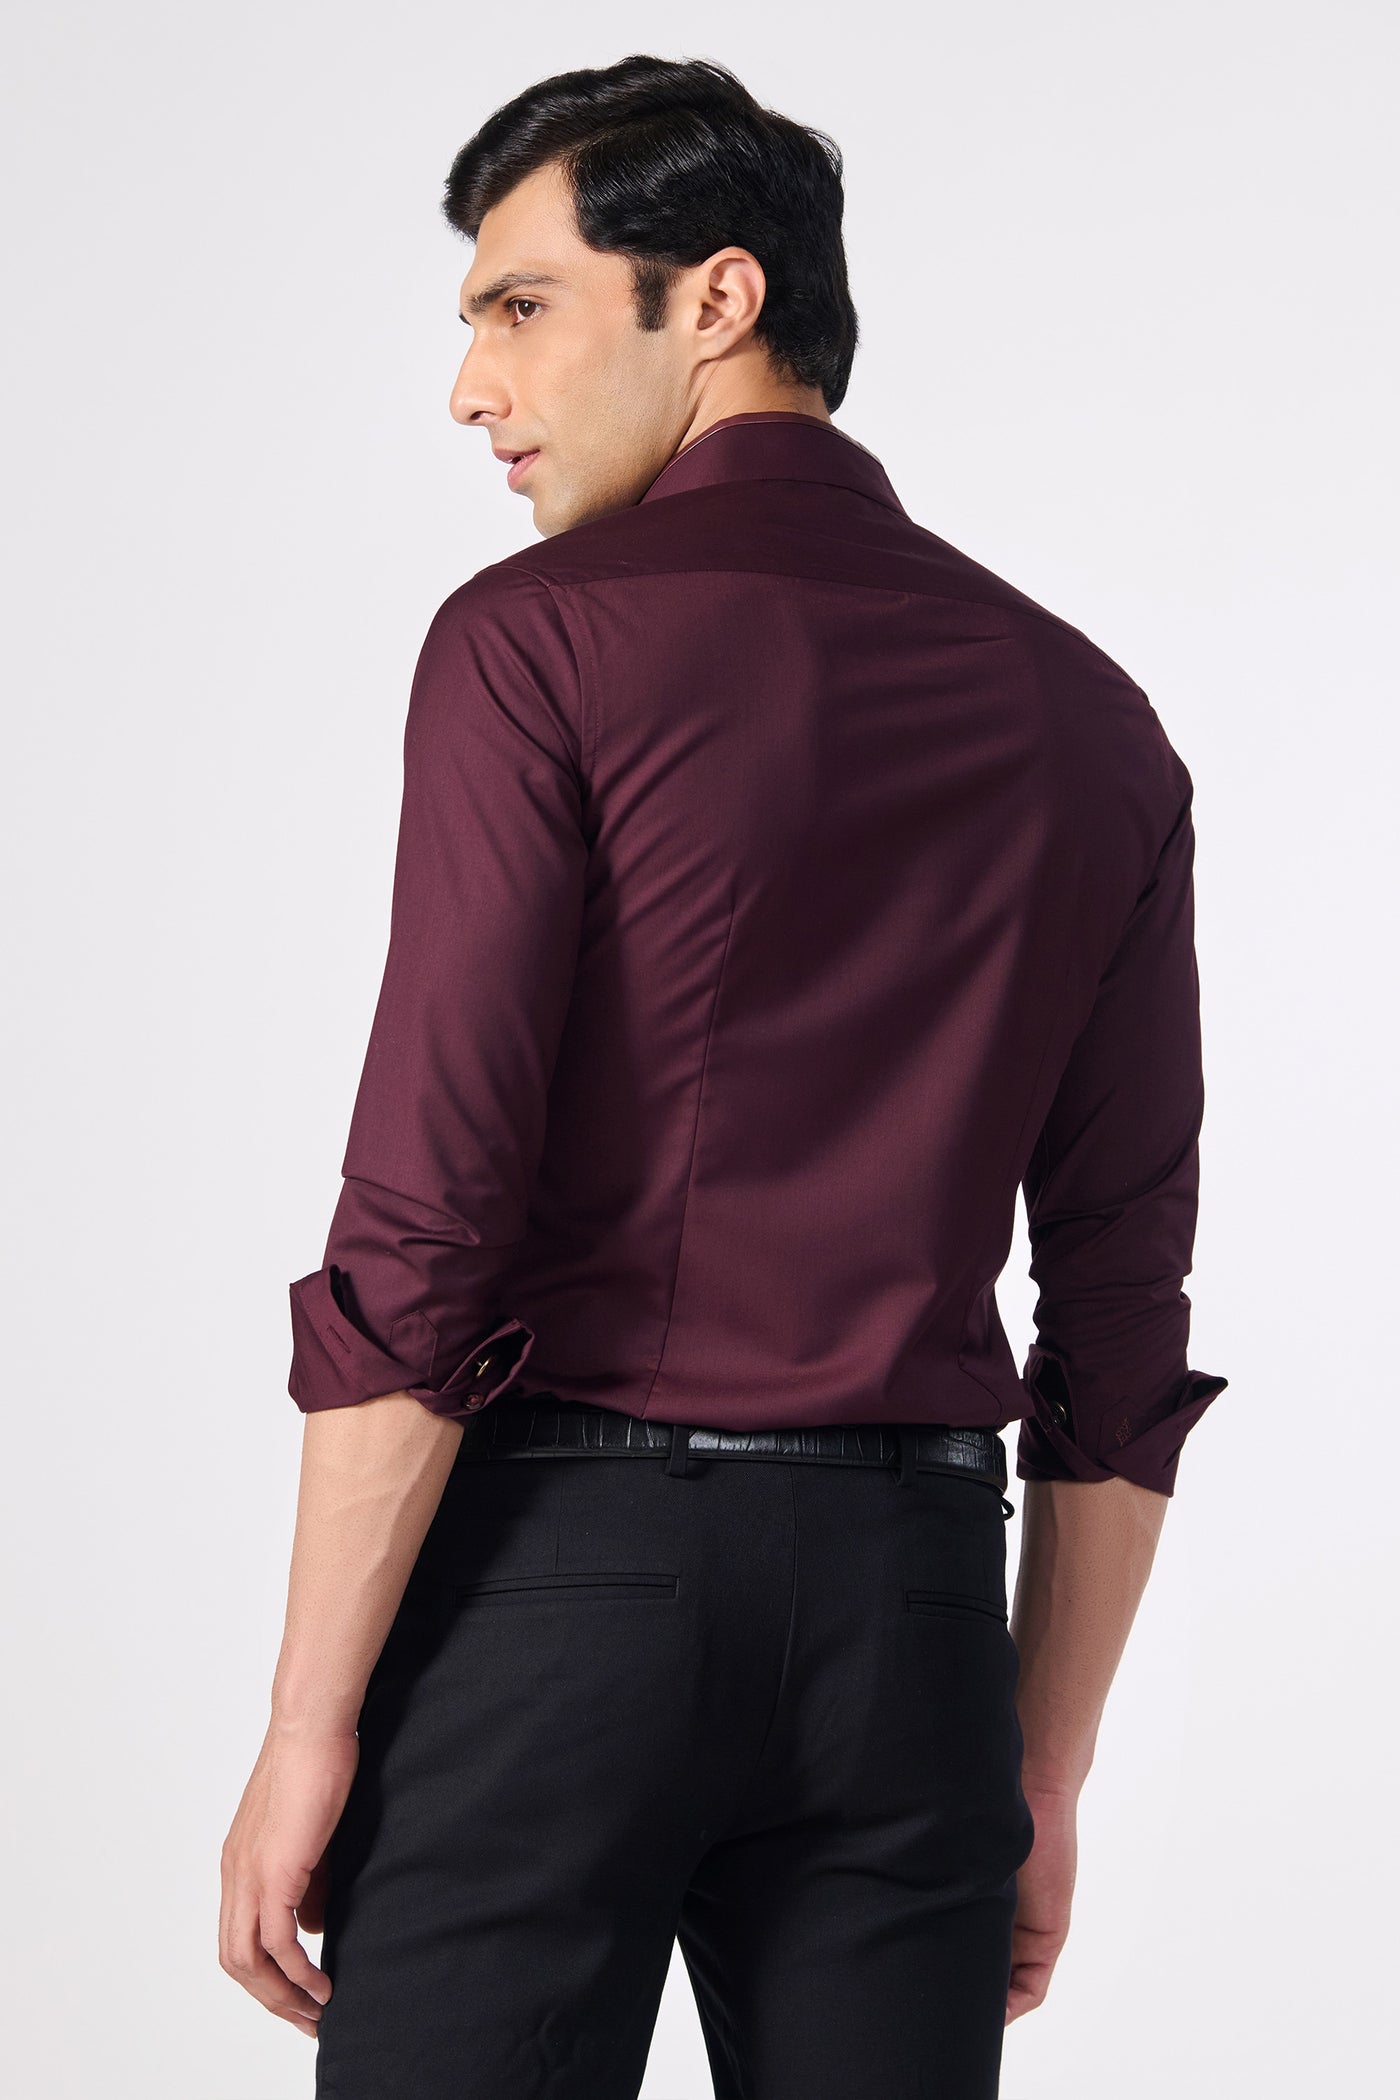 Shantanu & Nikhil Menswear Plum Shirt with Vegan Leather Details indian designer wear online shopping melange singapore